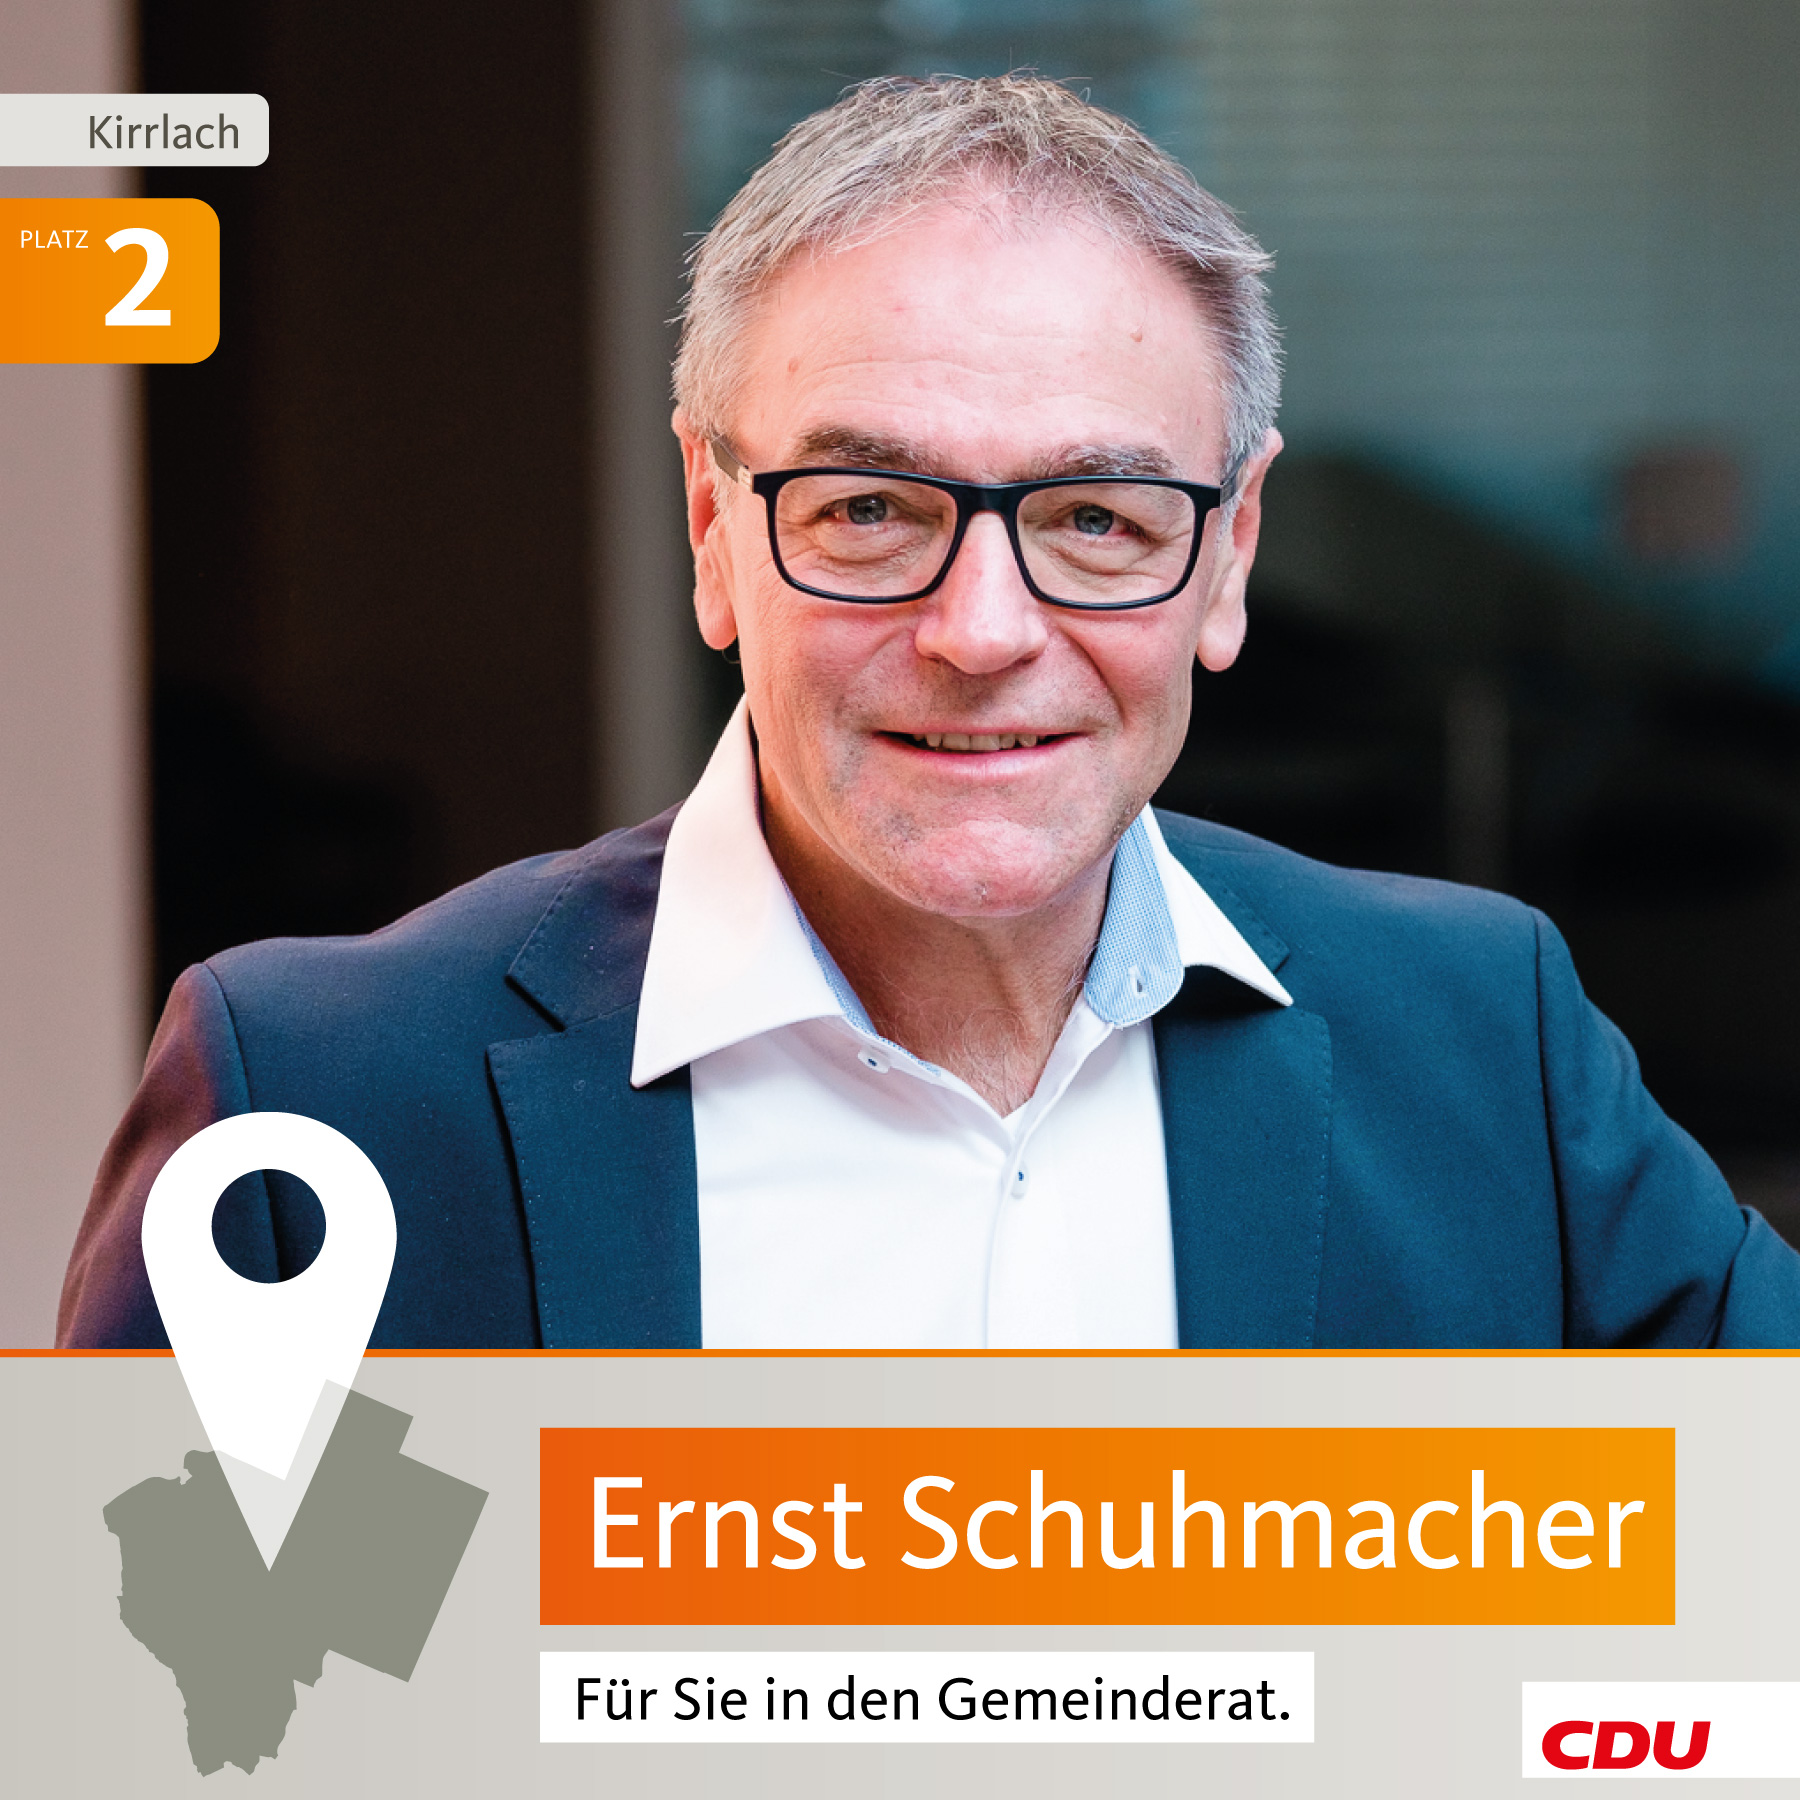 Ernst Schuhmacher